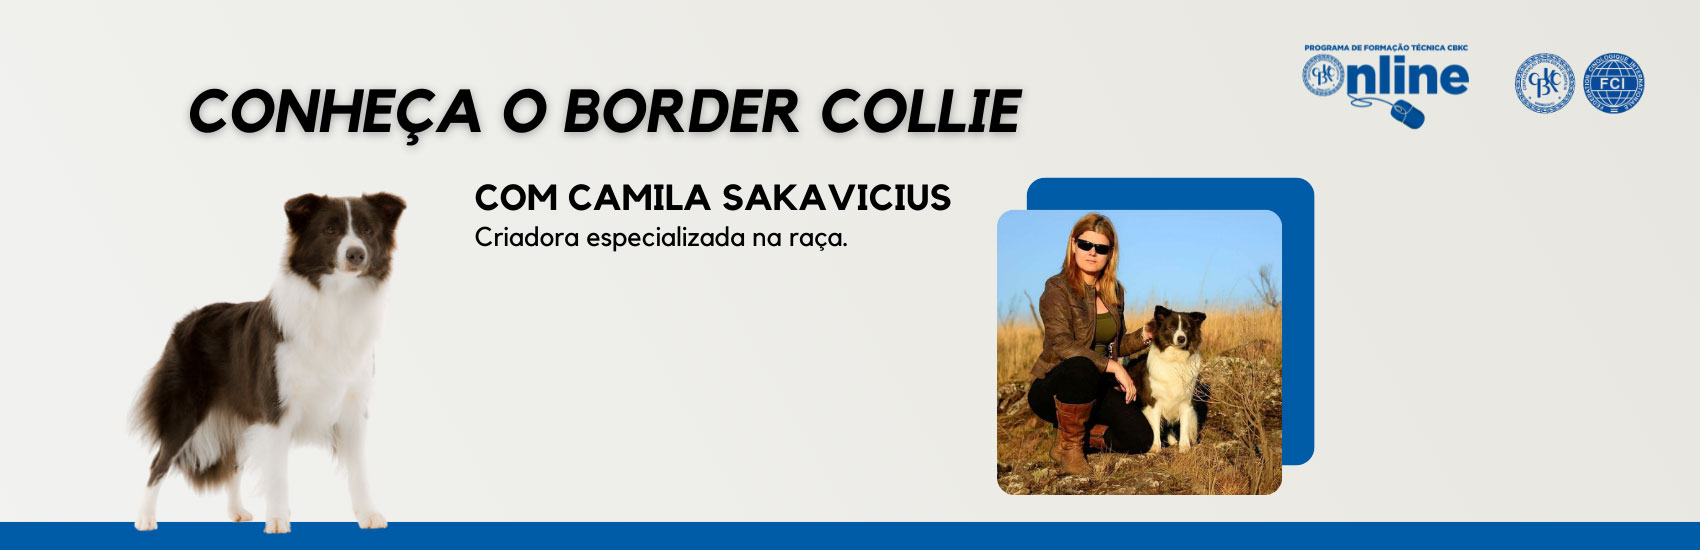 CBKC - Conheça o Border Collie